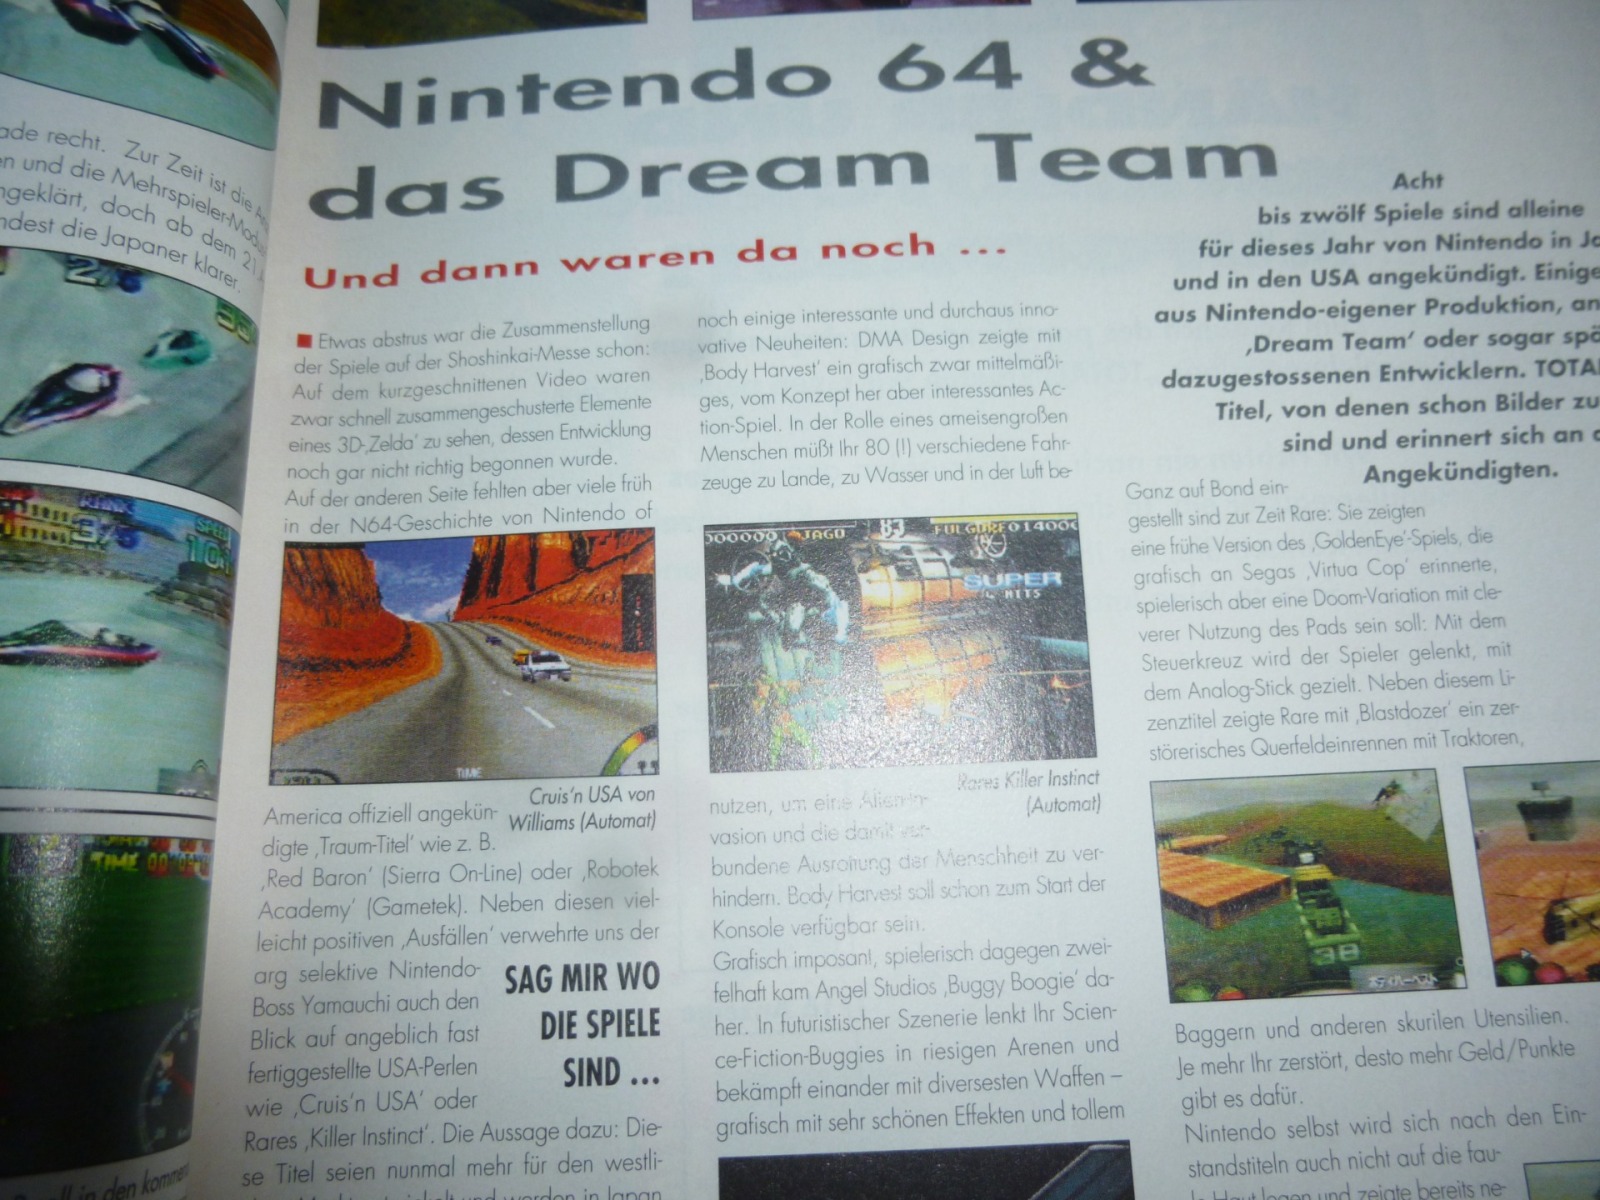 TOTAL Das unabhängige Magazin - 100% Nintendo - Ausgabe 3/96 1996 7